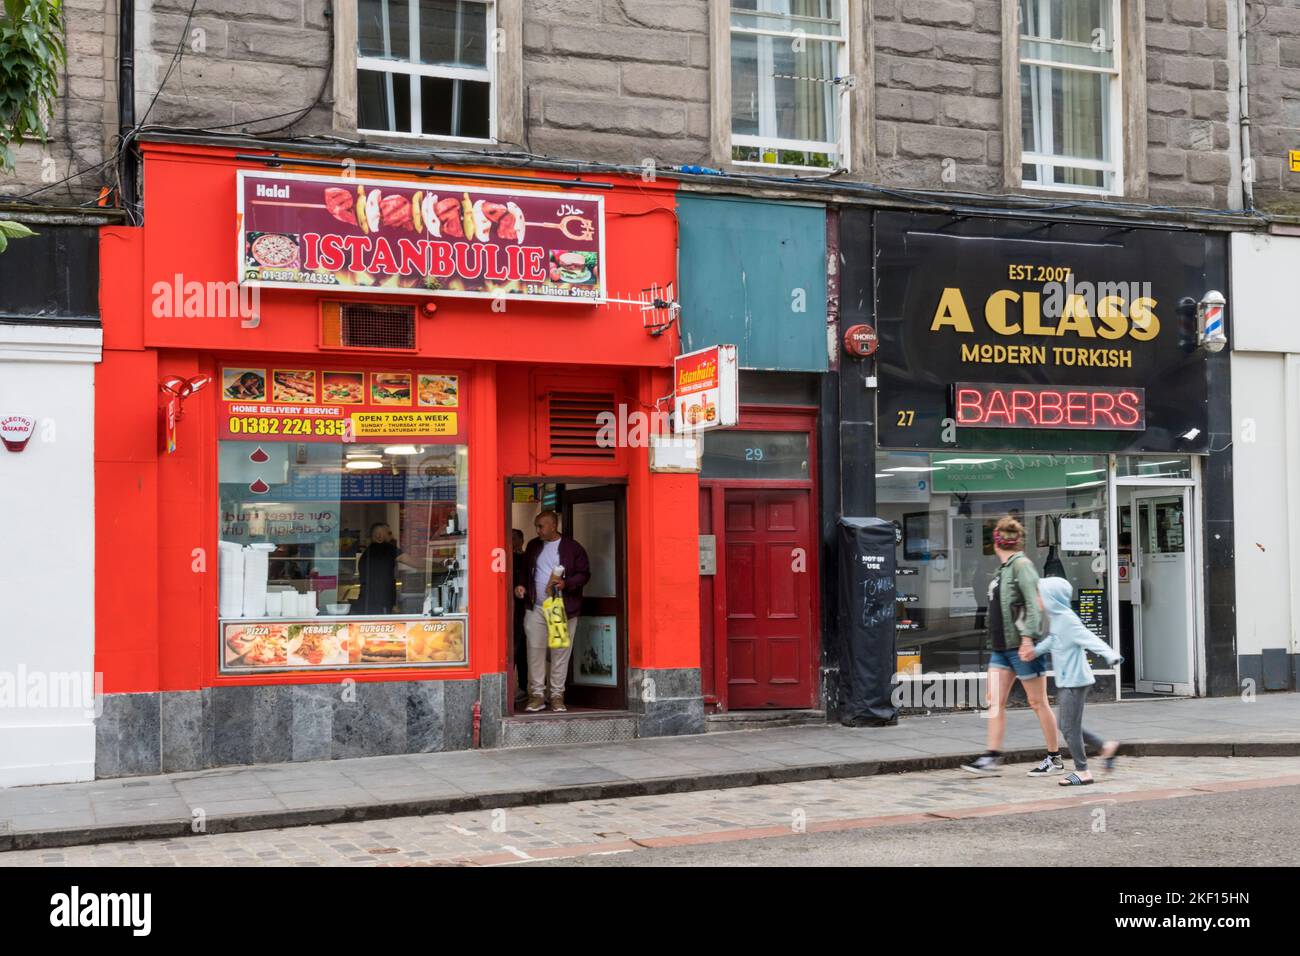 Neue Verwendungsmöglichkeiten für traditionelle Geschäfte. In der Union Street, Dundee, befinden sich ein türkischer Kebab-Laden und türkische Barber nebeneinander. Stockfoto